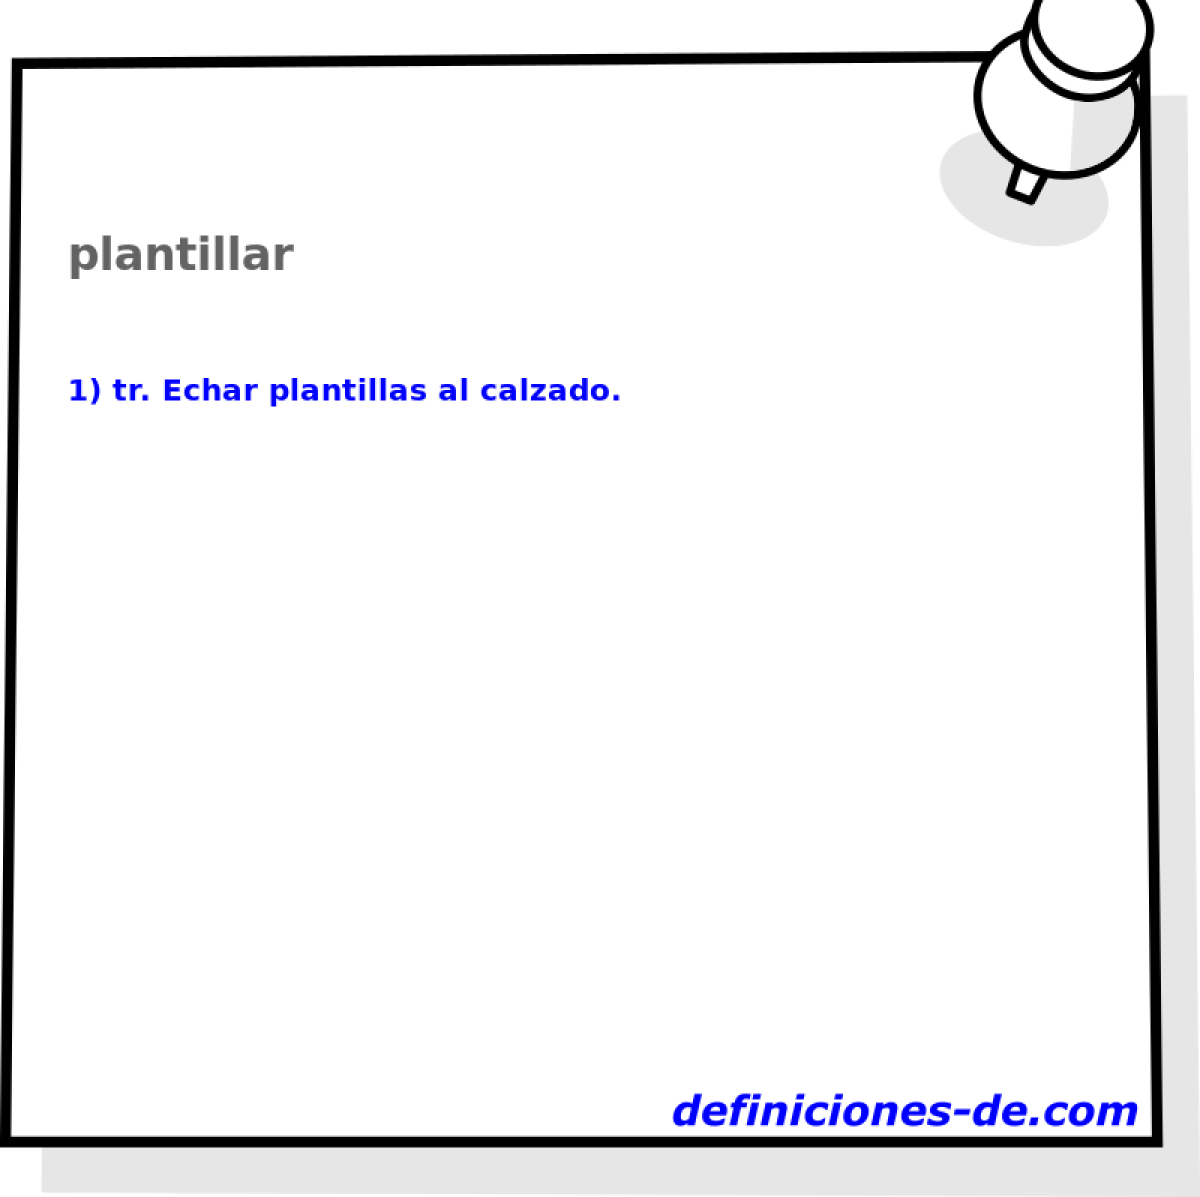 plantillar 